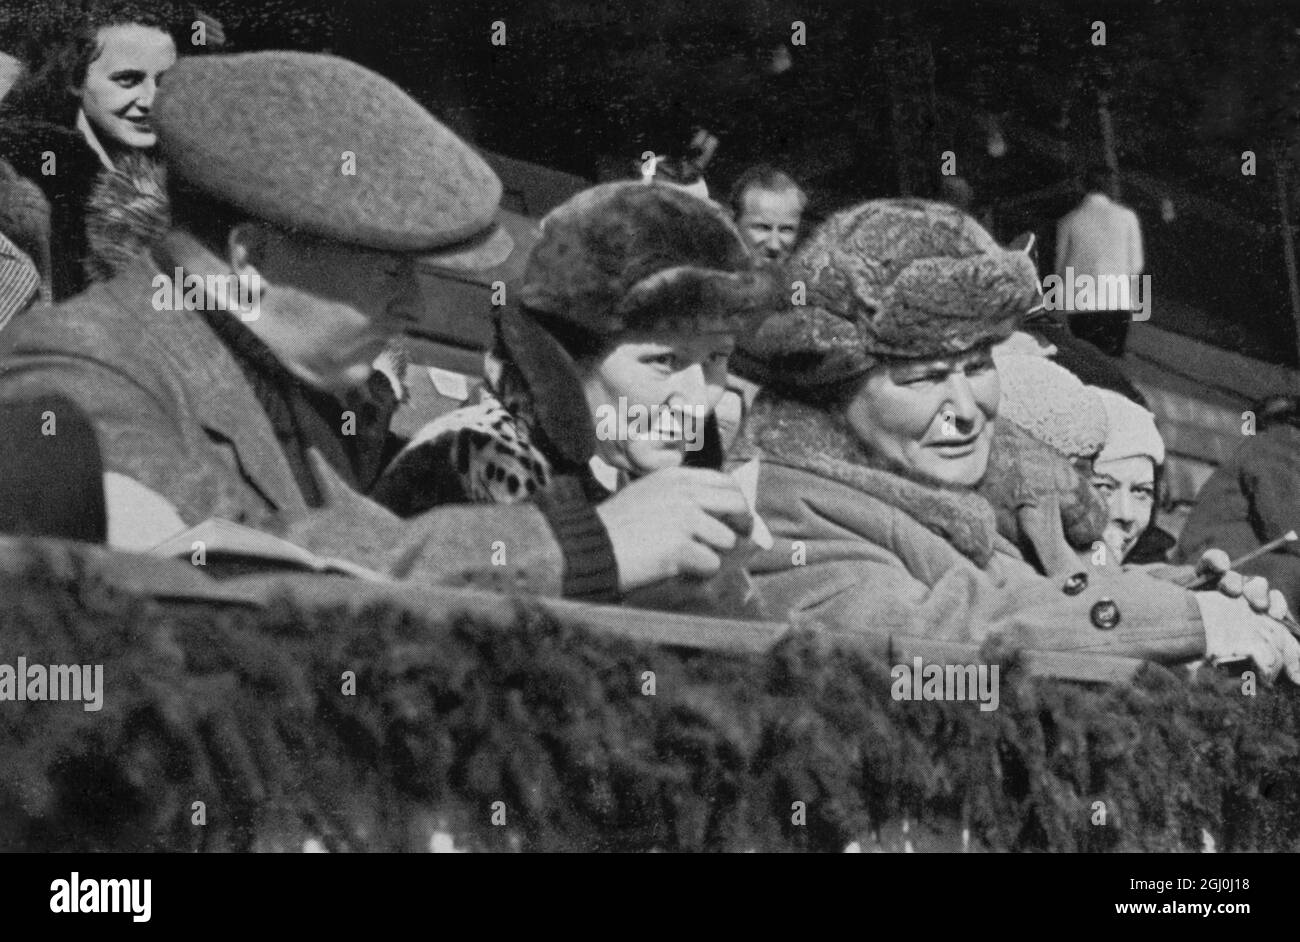 Le président Hermann Goring regardant le hockey sur glace dans le stade de patinage sur glace. Hermann Wilhelm Göring (également Goering en anglais) (12 janvier 1893 - 15 octobre 1946) était un homme politique et un chef militaire allemand, un membre dirigeant du Parti nazi, deuxième à la tête du troisième Reich, et commandant de la Luftwaffe. ©TopFoto Banque D'Images